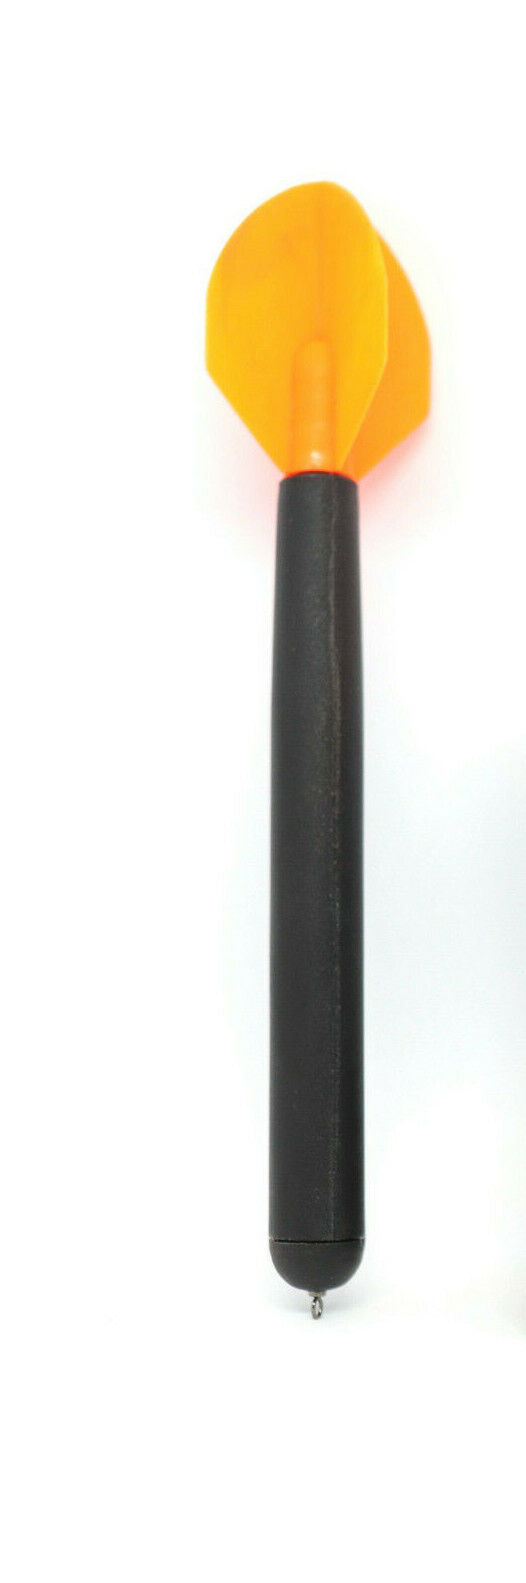 Markerpose von Behr - 22 cm lang